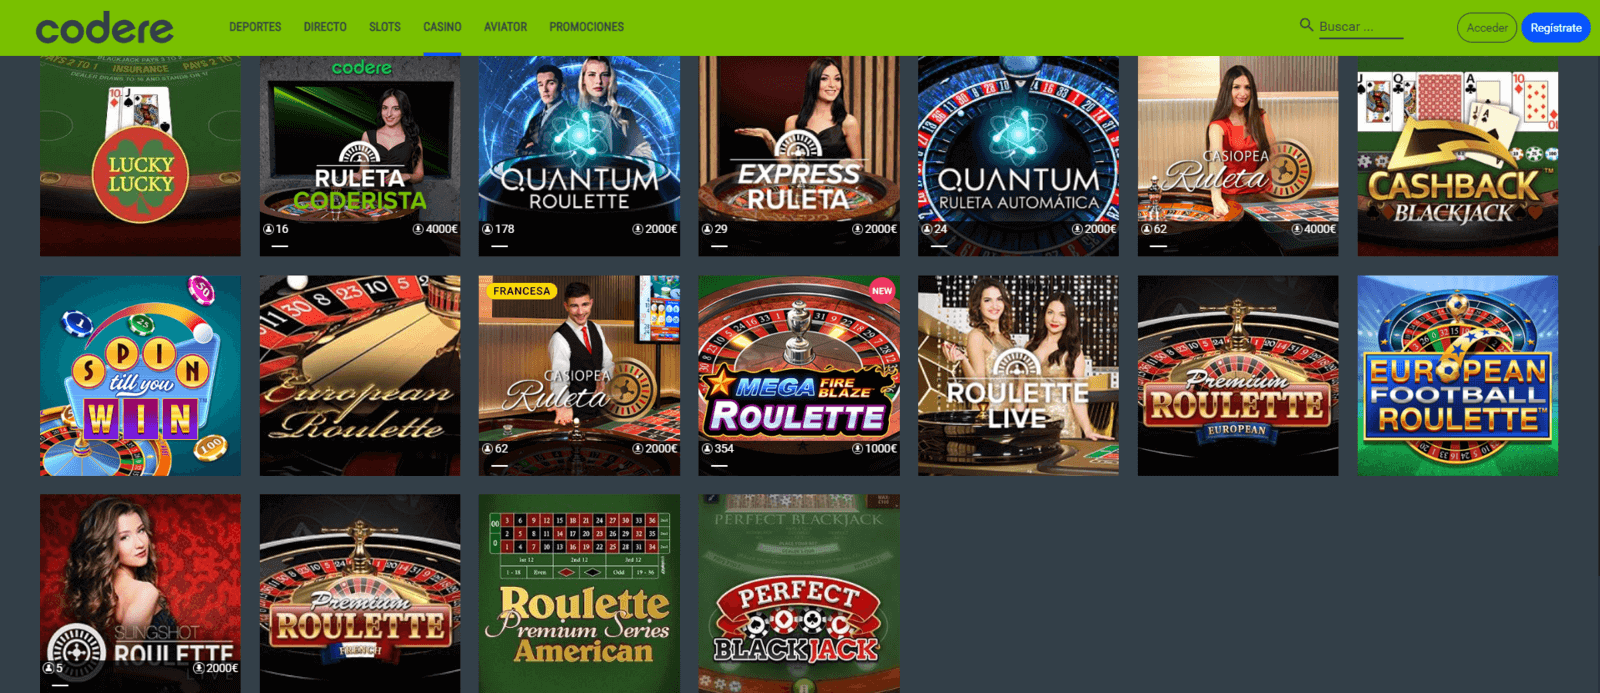 Juegos de Codere Casino online con dinero real de España